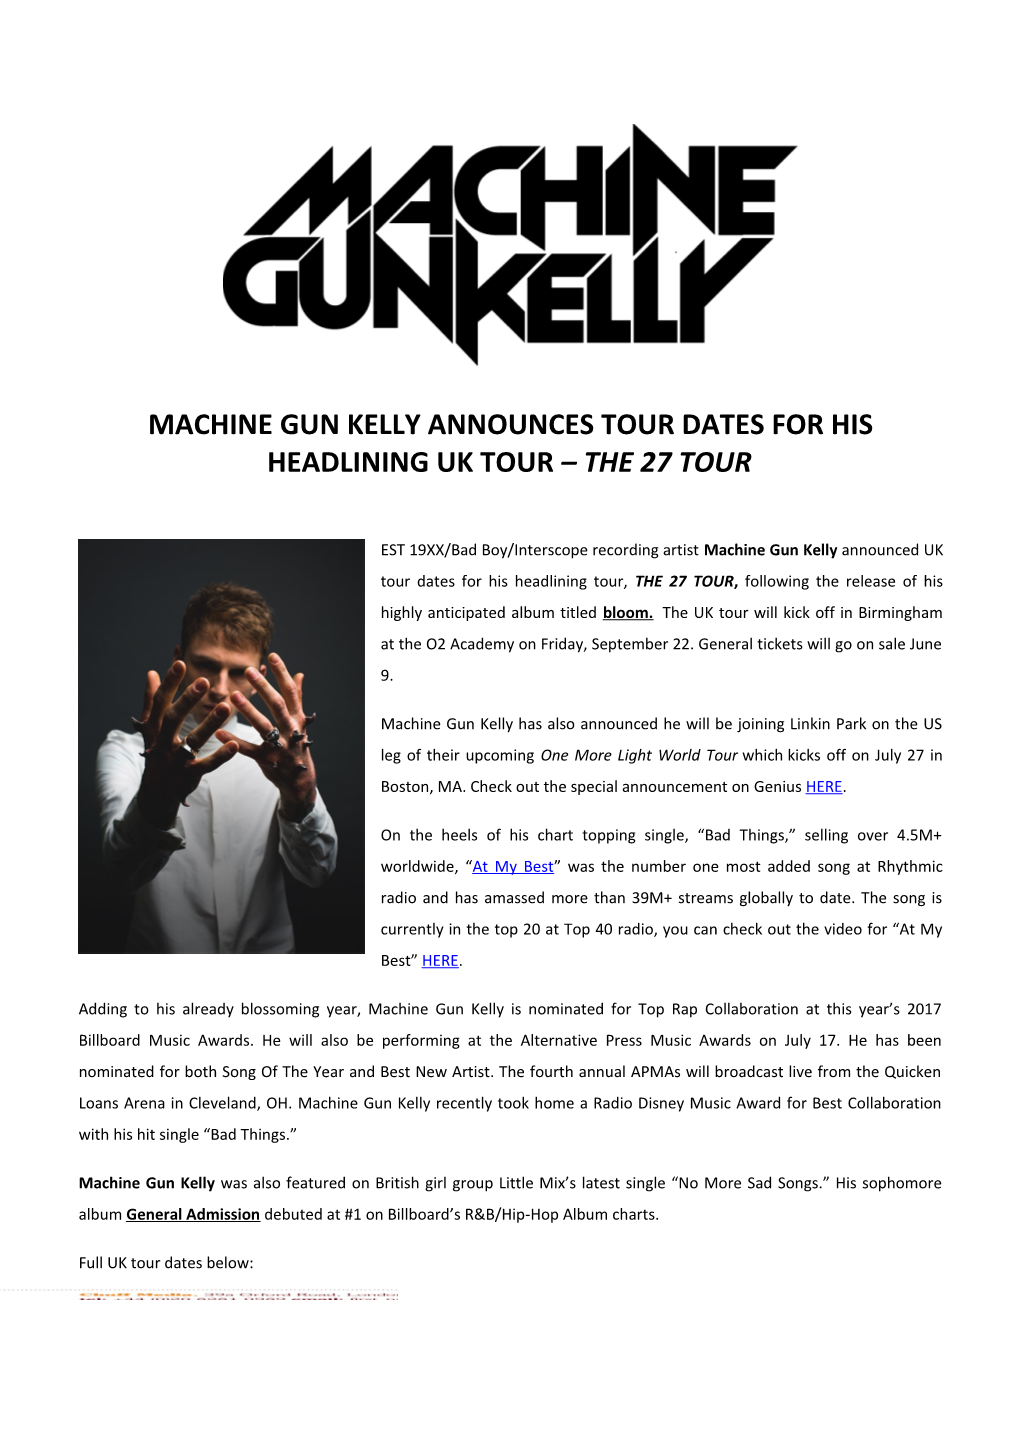 Machine Gun Kelly Announces Tour Dates for His Headlining Uk Tour the 27 Tour